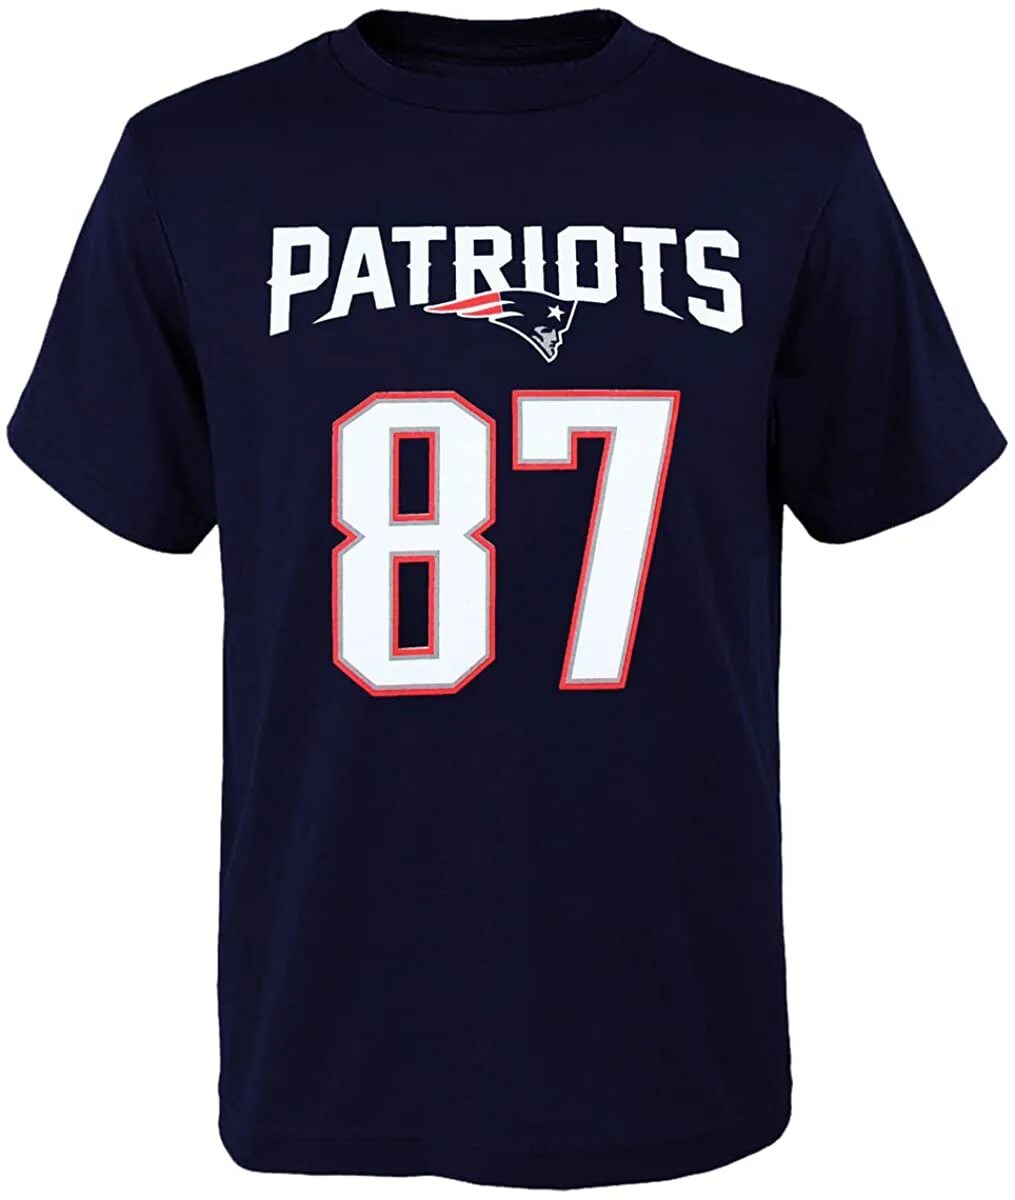 T me number pass. Намбер Ван футболка. Число 4 на футболку. NFL Patriots футболка. RIGORER футболка.